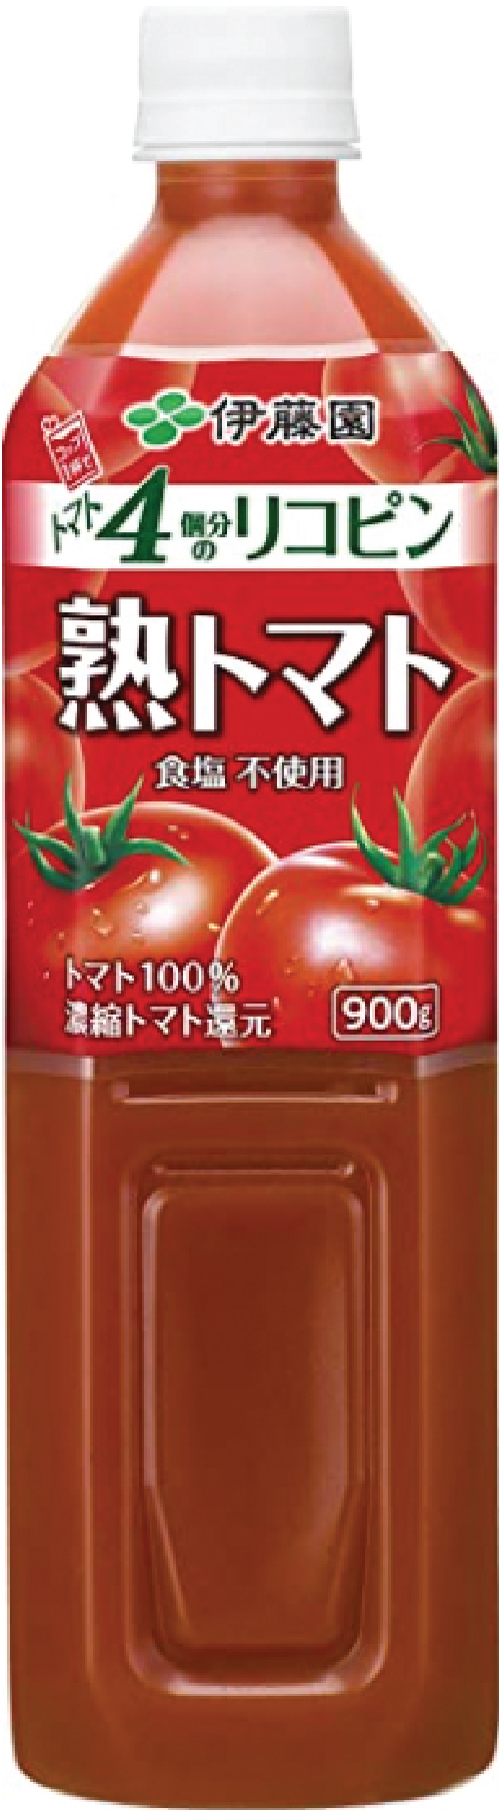 7月特売品の伊藤園 熟トマトジュース